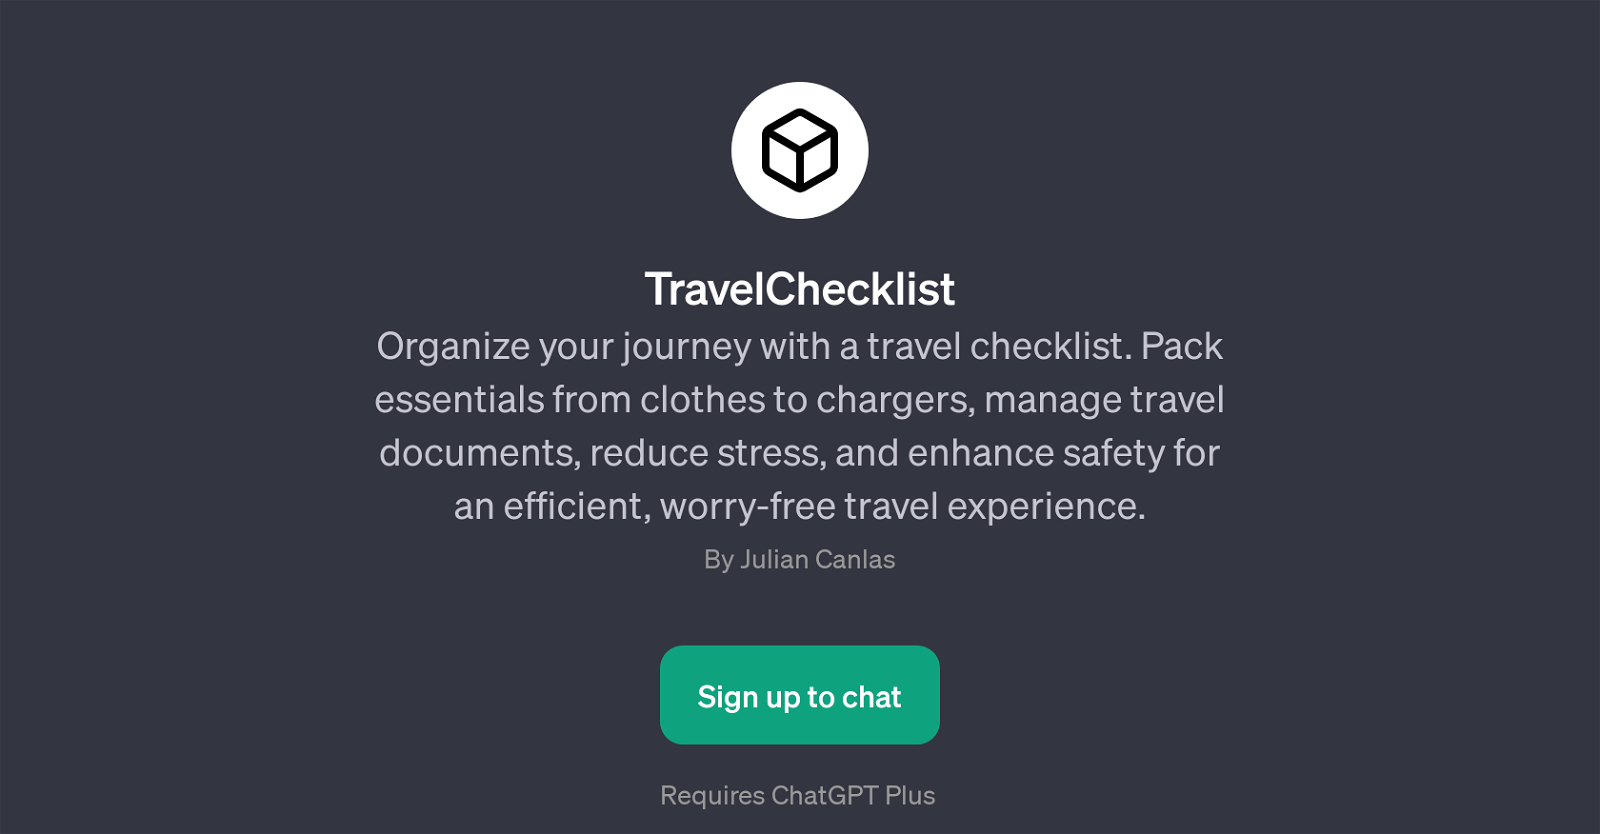 TravelChecklist website